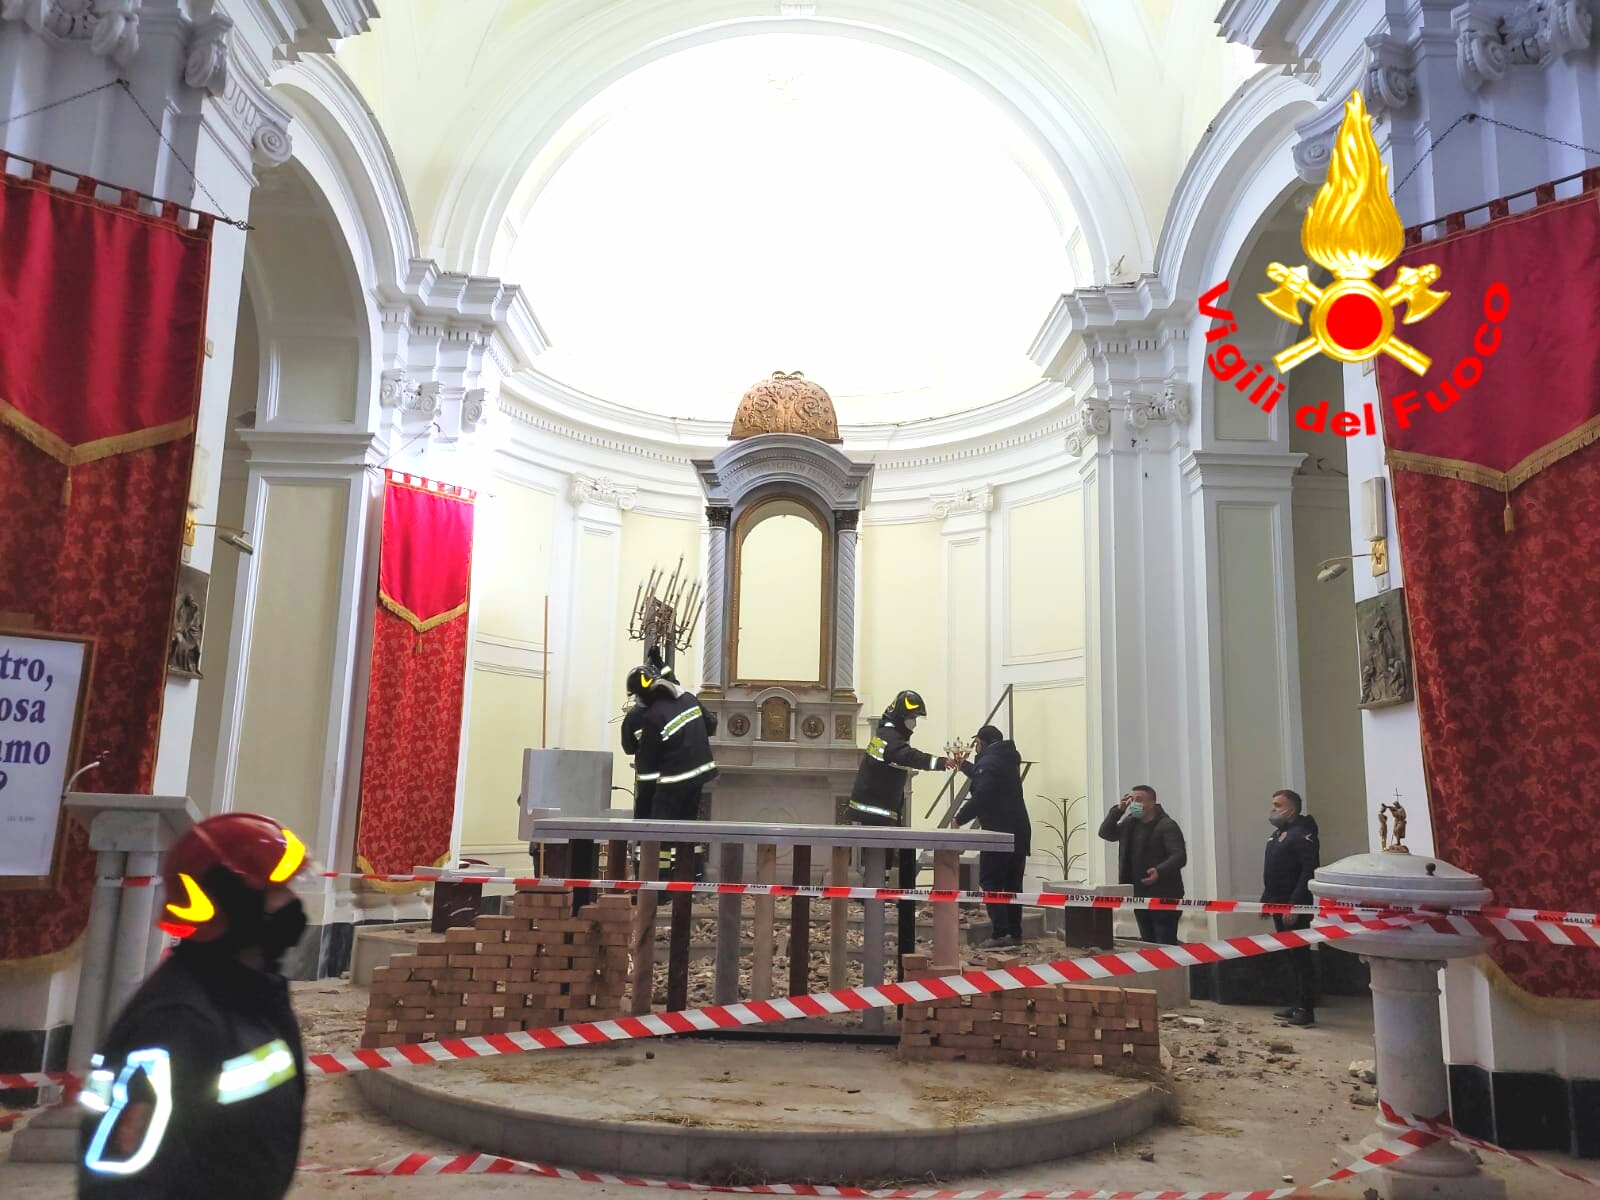 Baiano| Crolla parte del soffitto nella chiesa di Santo Stefano